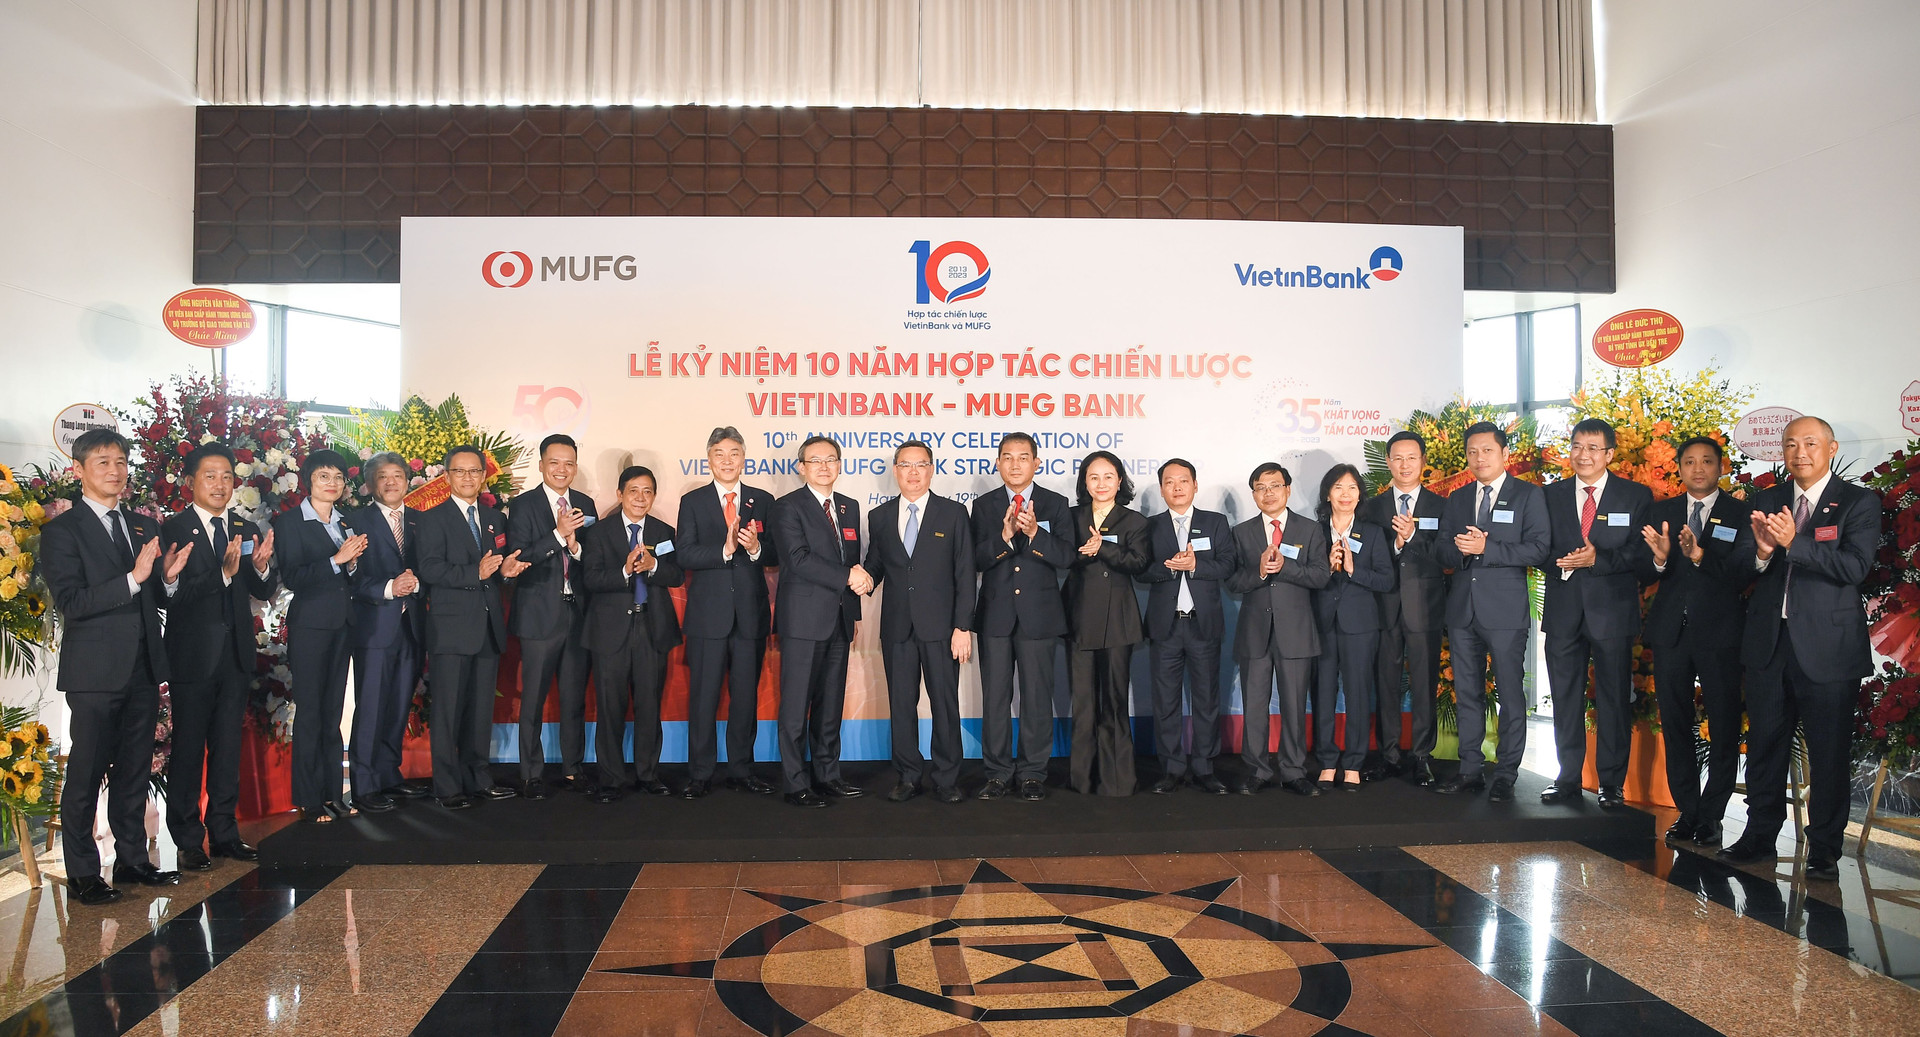 Liên minh hợp tác giữa VietinBank và MUFG đã mở ra giai đoạn phát triển mới cho hai ngân hàng.